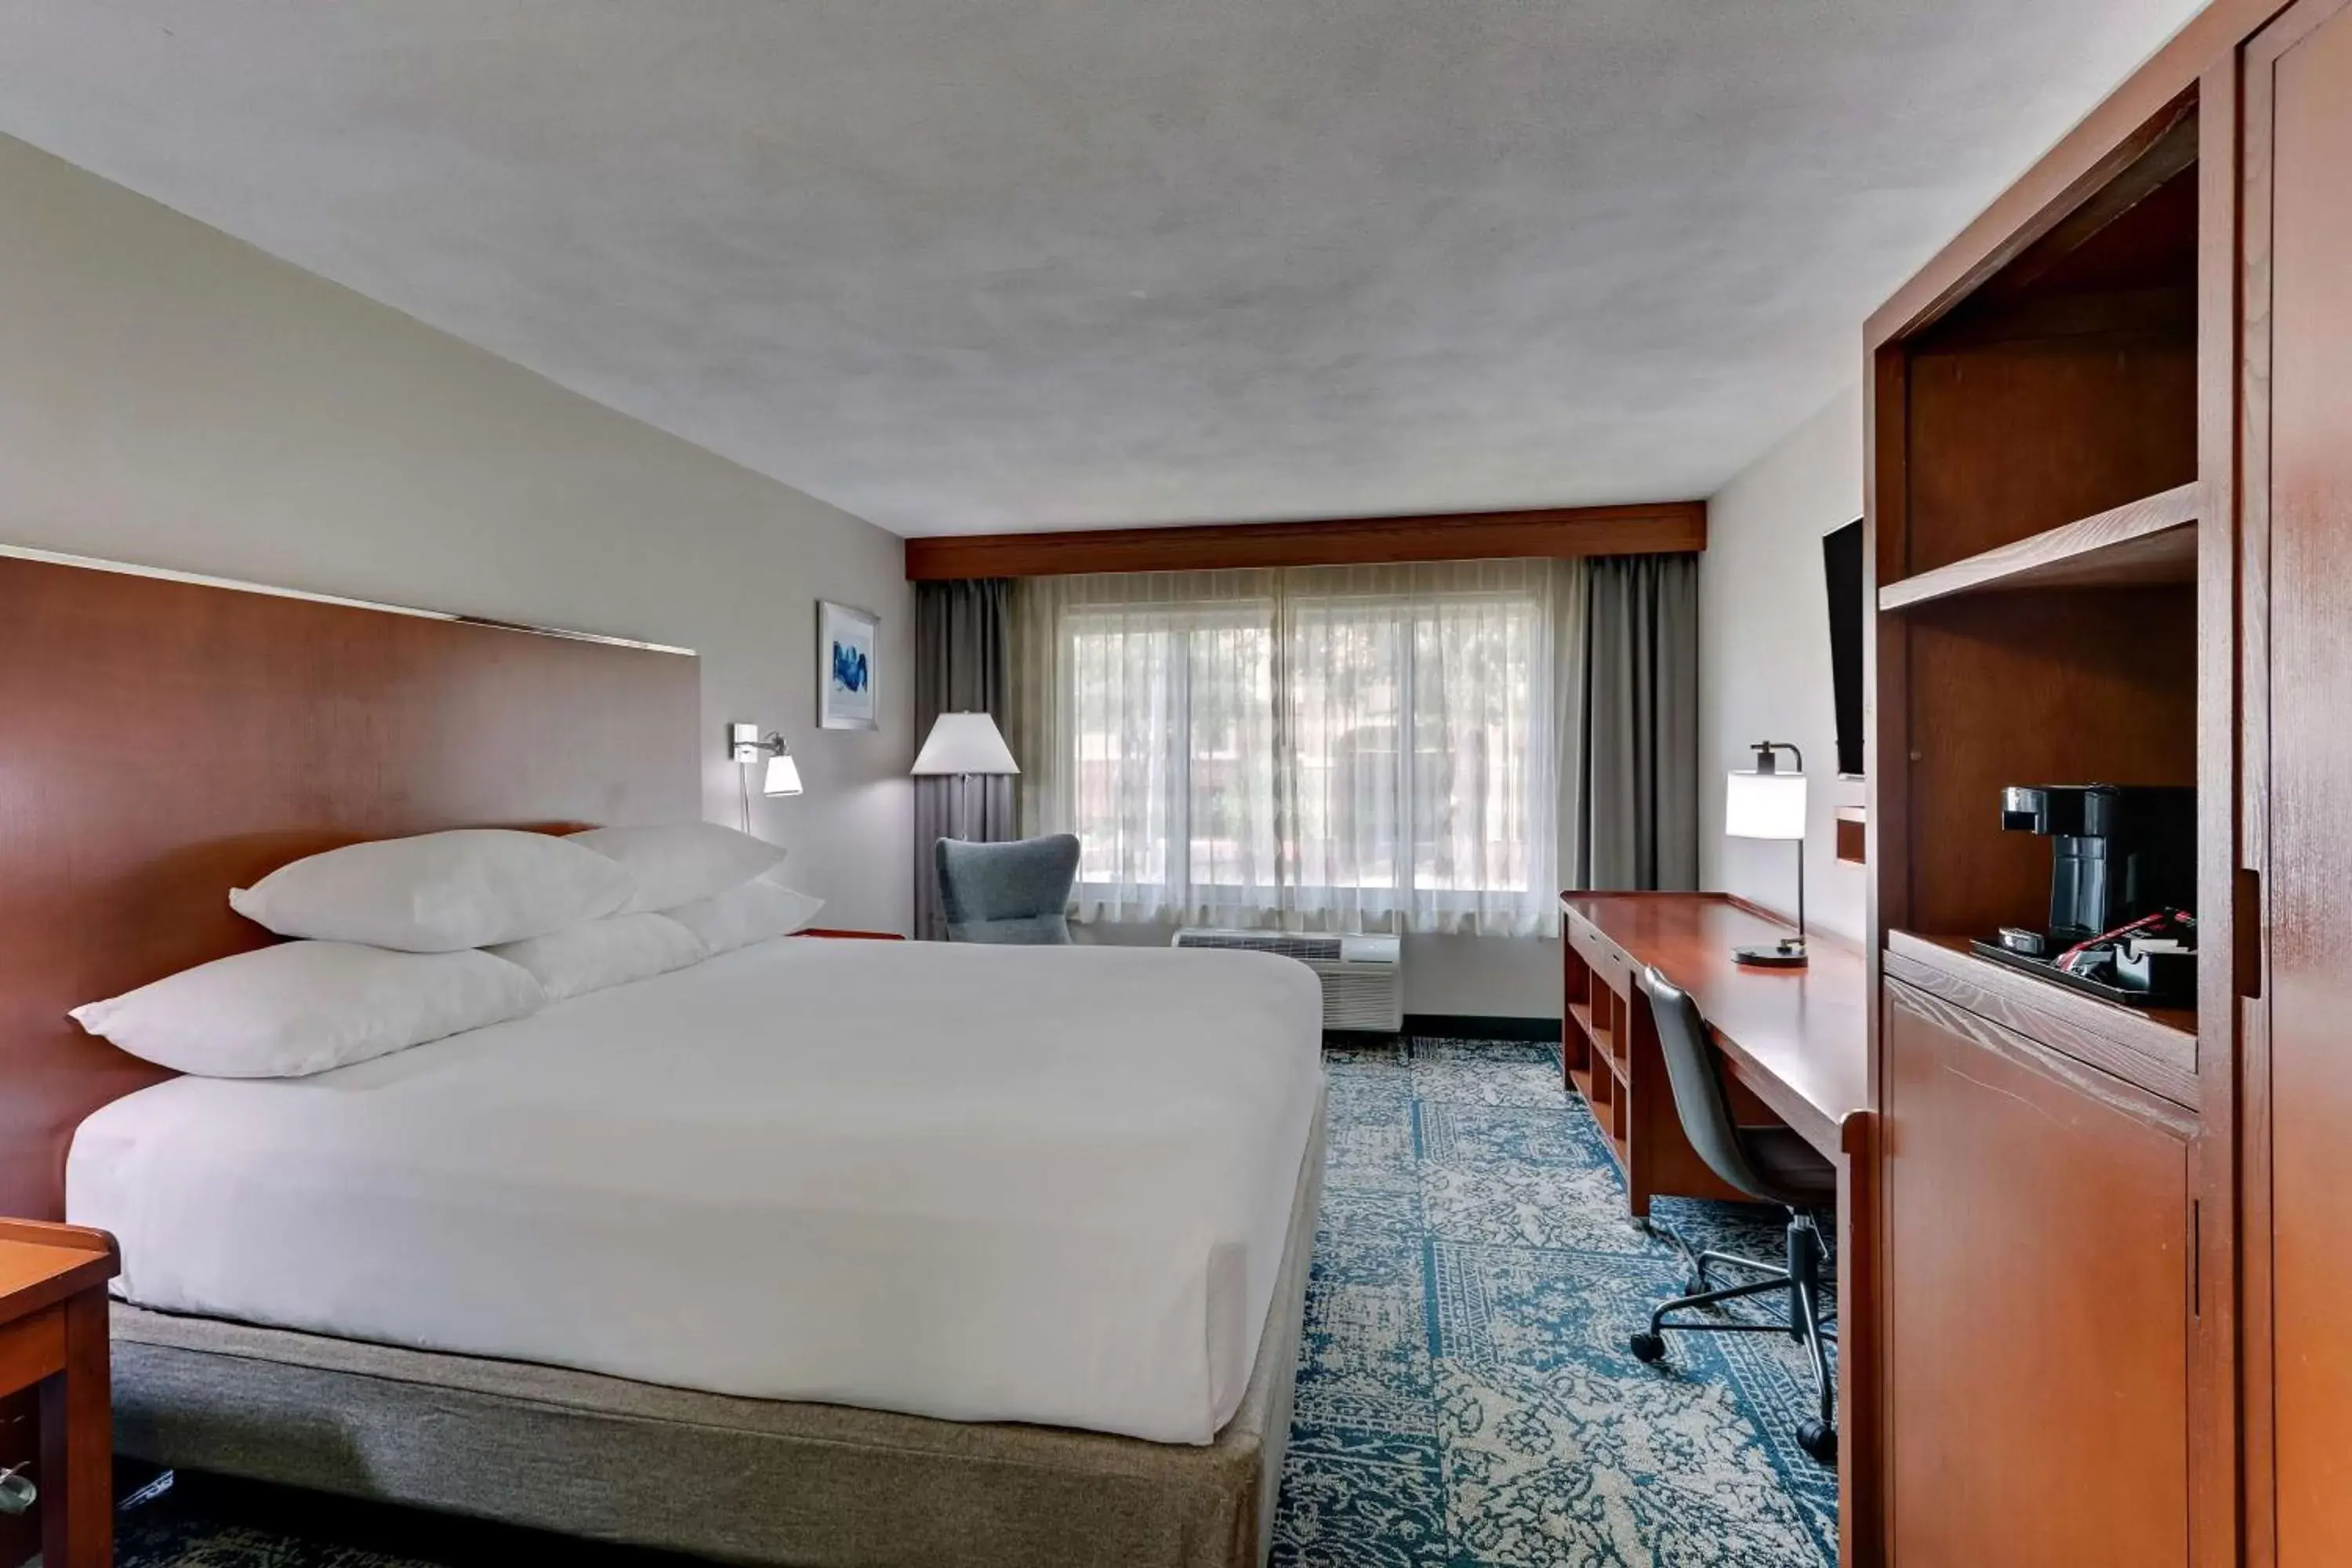 Bedroom in Drury Inn & Suites San Antonio Airport